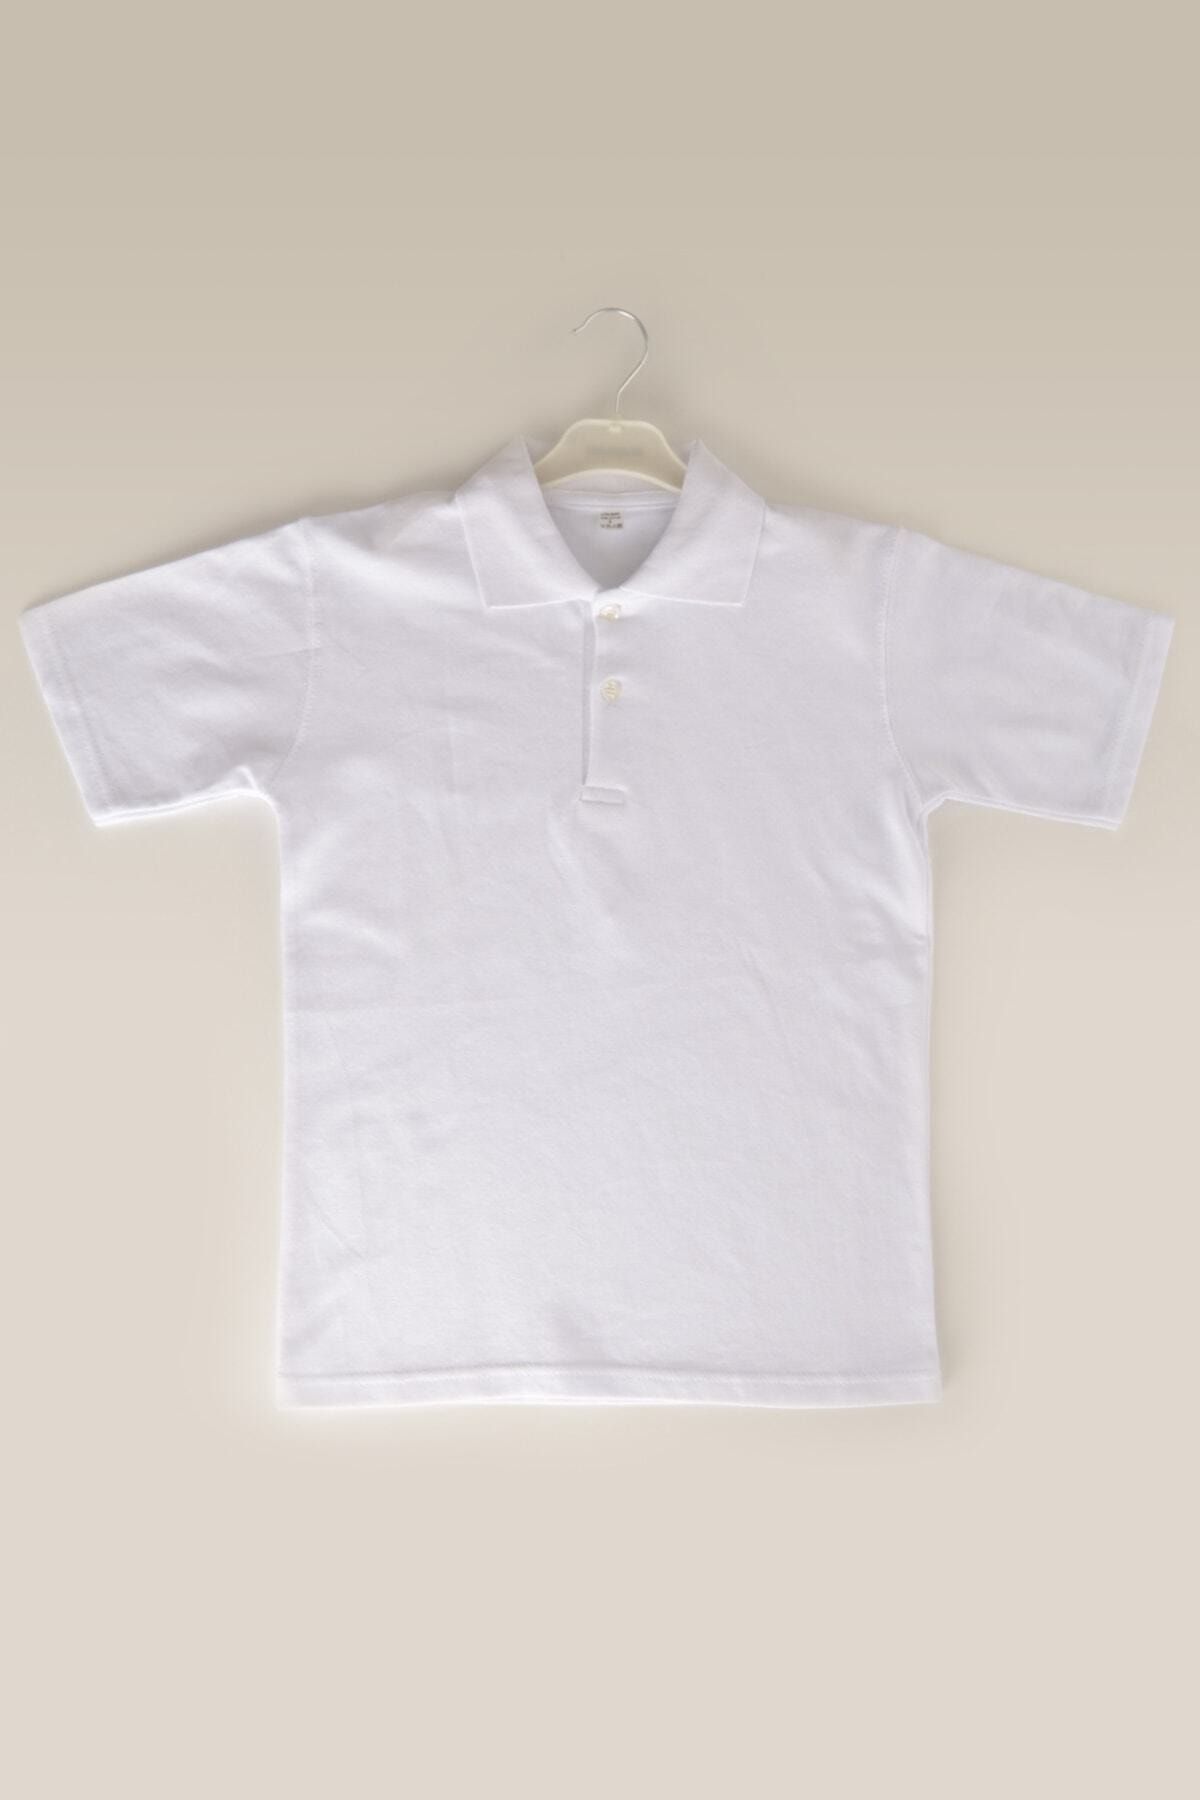 ÇÖLBAY Unisex Çocuk Beyaz Polo Yaka Kısa Kol Düz Renk T-shirt